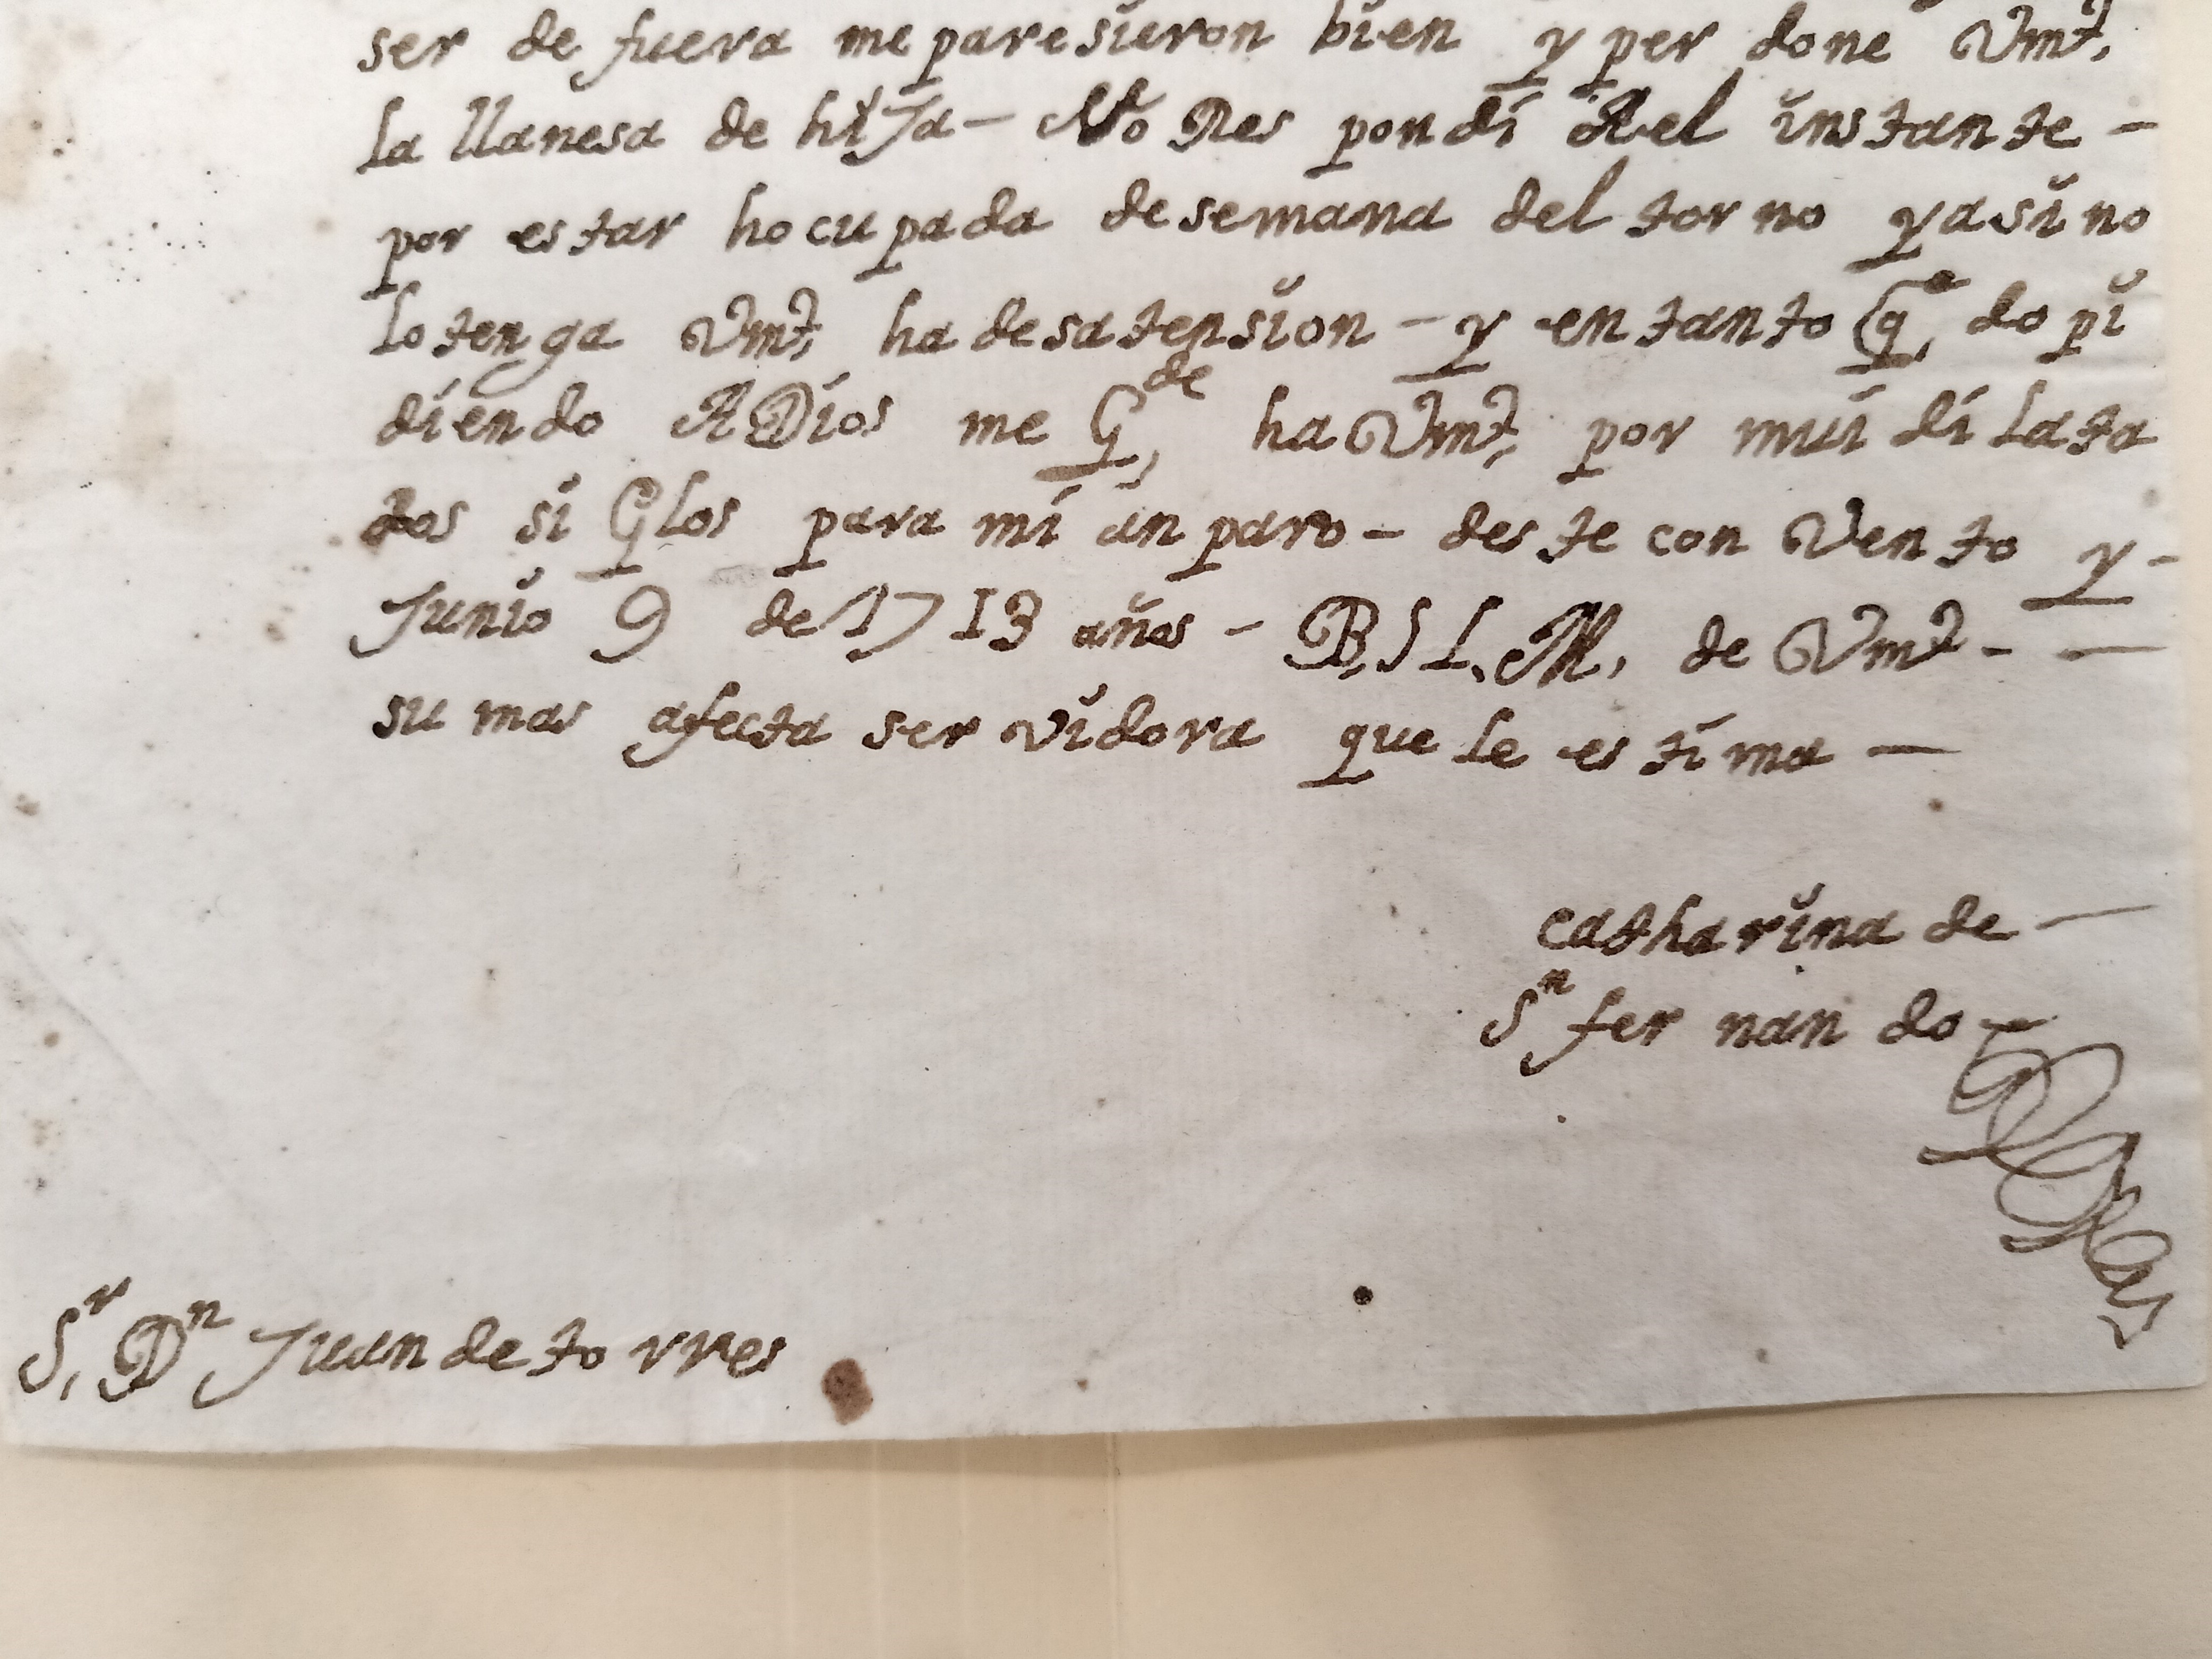 Carta dirigida al Señor Don Juan de torres de catharina de San fernando 